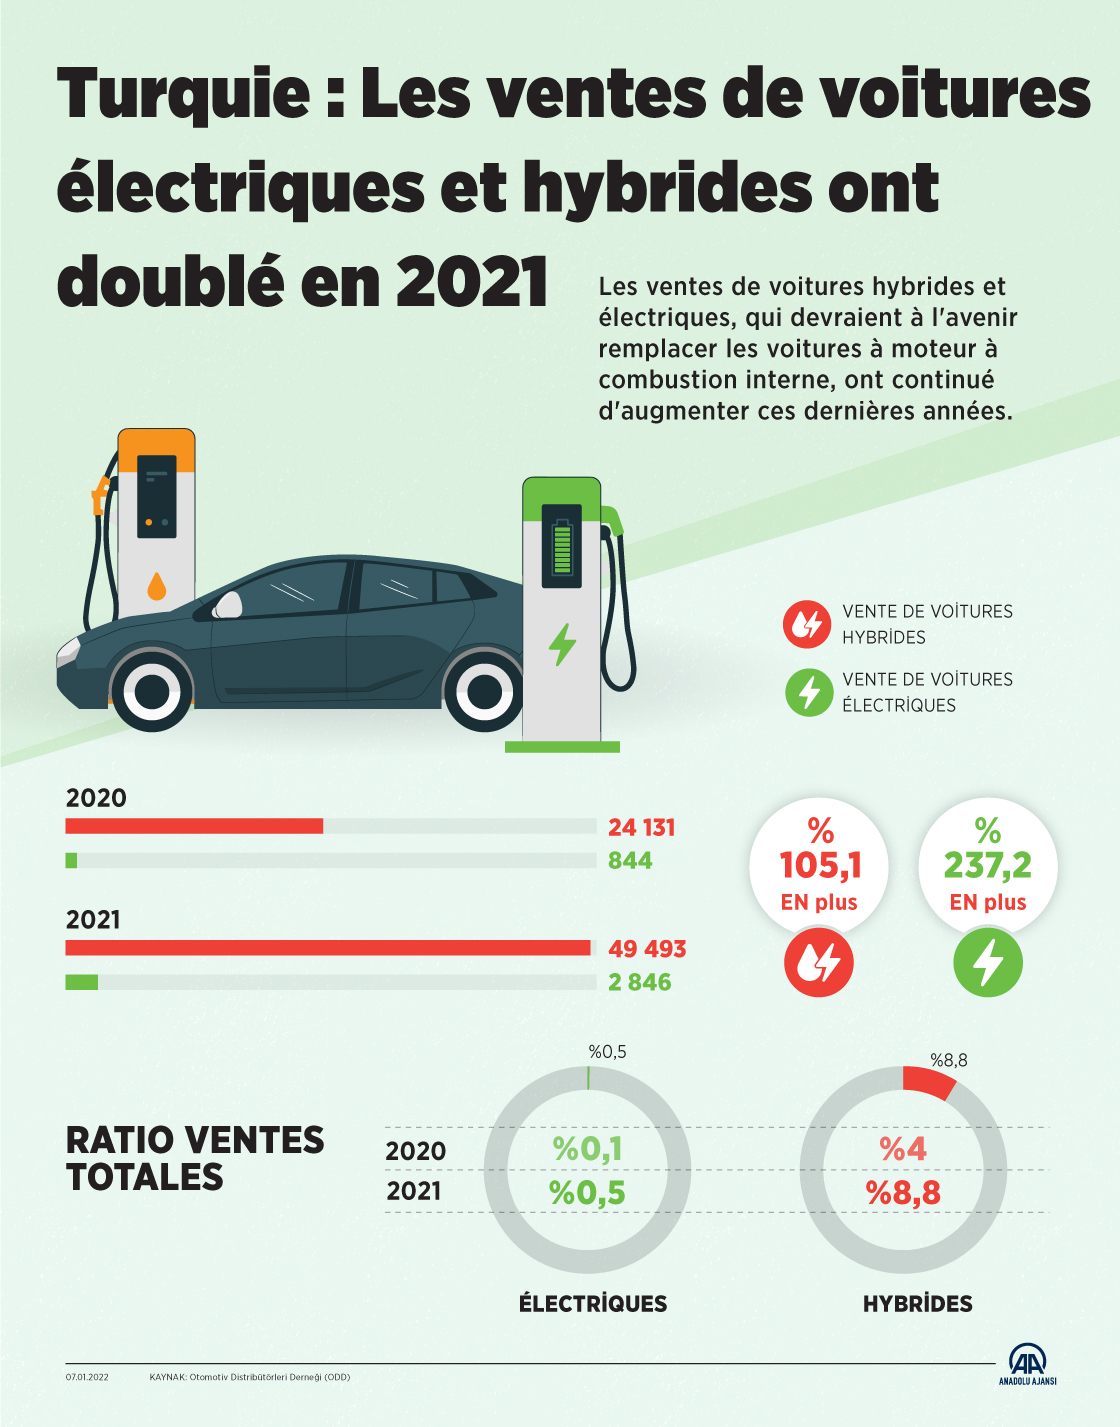 Turquie : Les ventes de voitures électriques et hybrides ont doublé en 2021